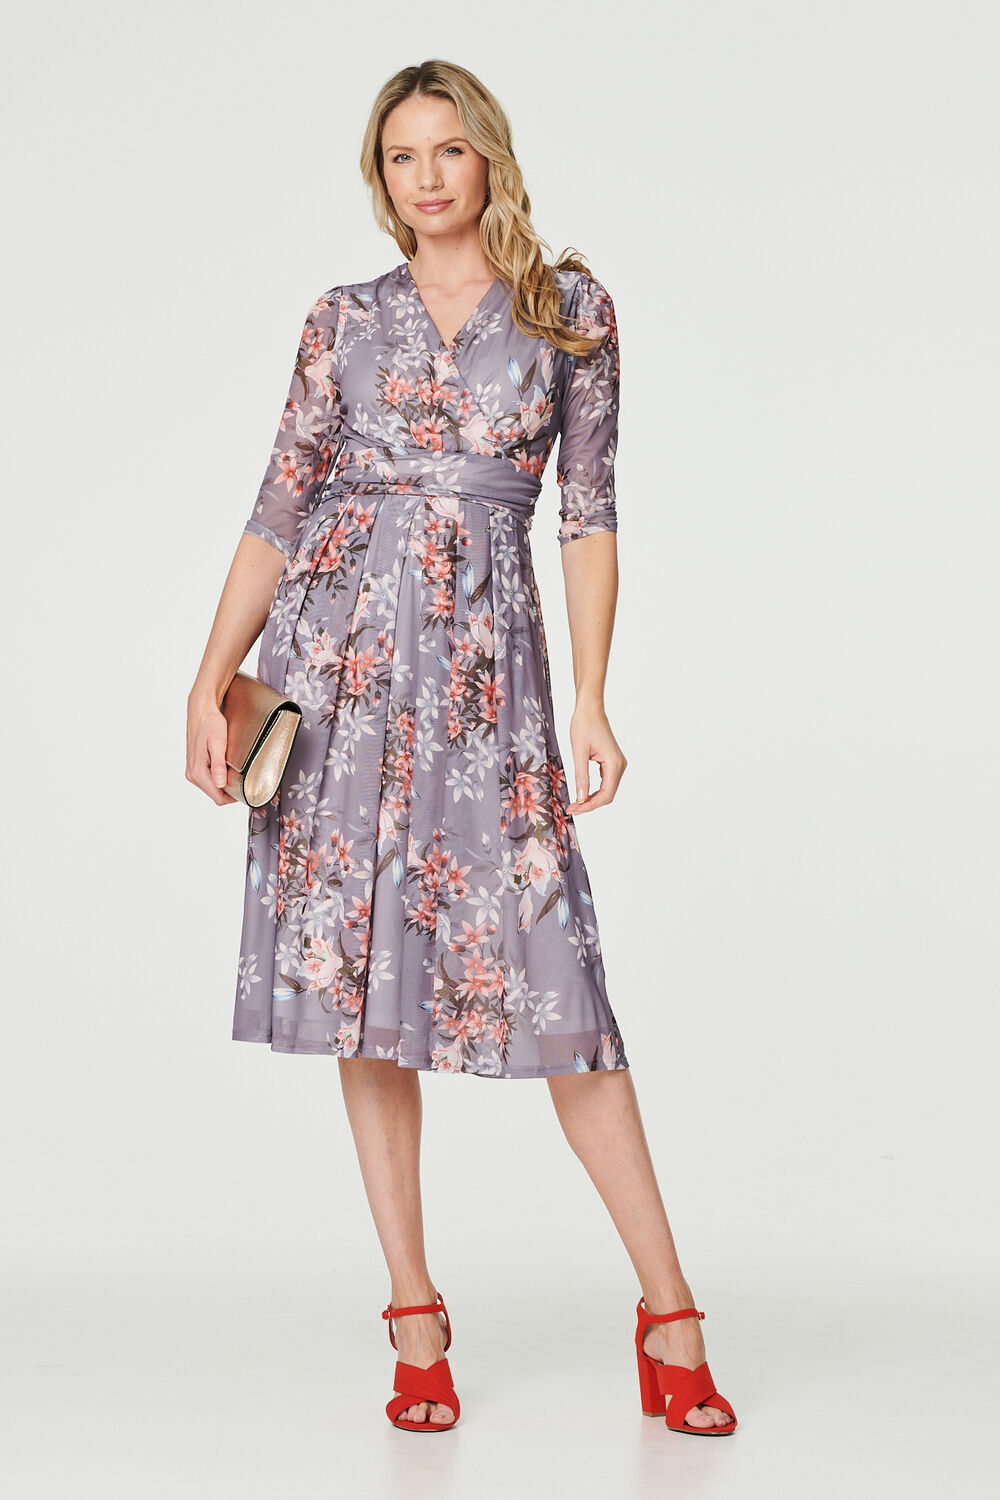 Izabel London Grey - Floral Layered V-Neck Midi Dress, Size: 18